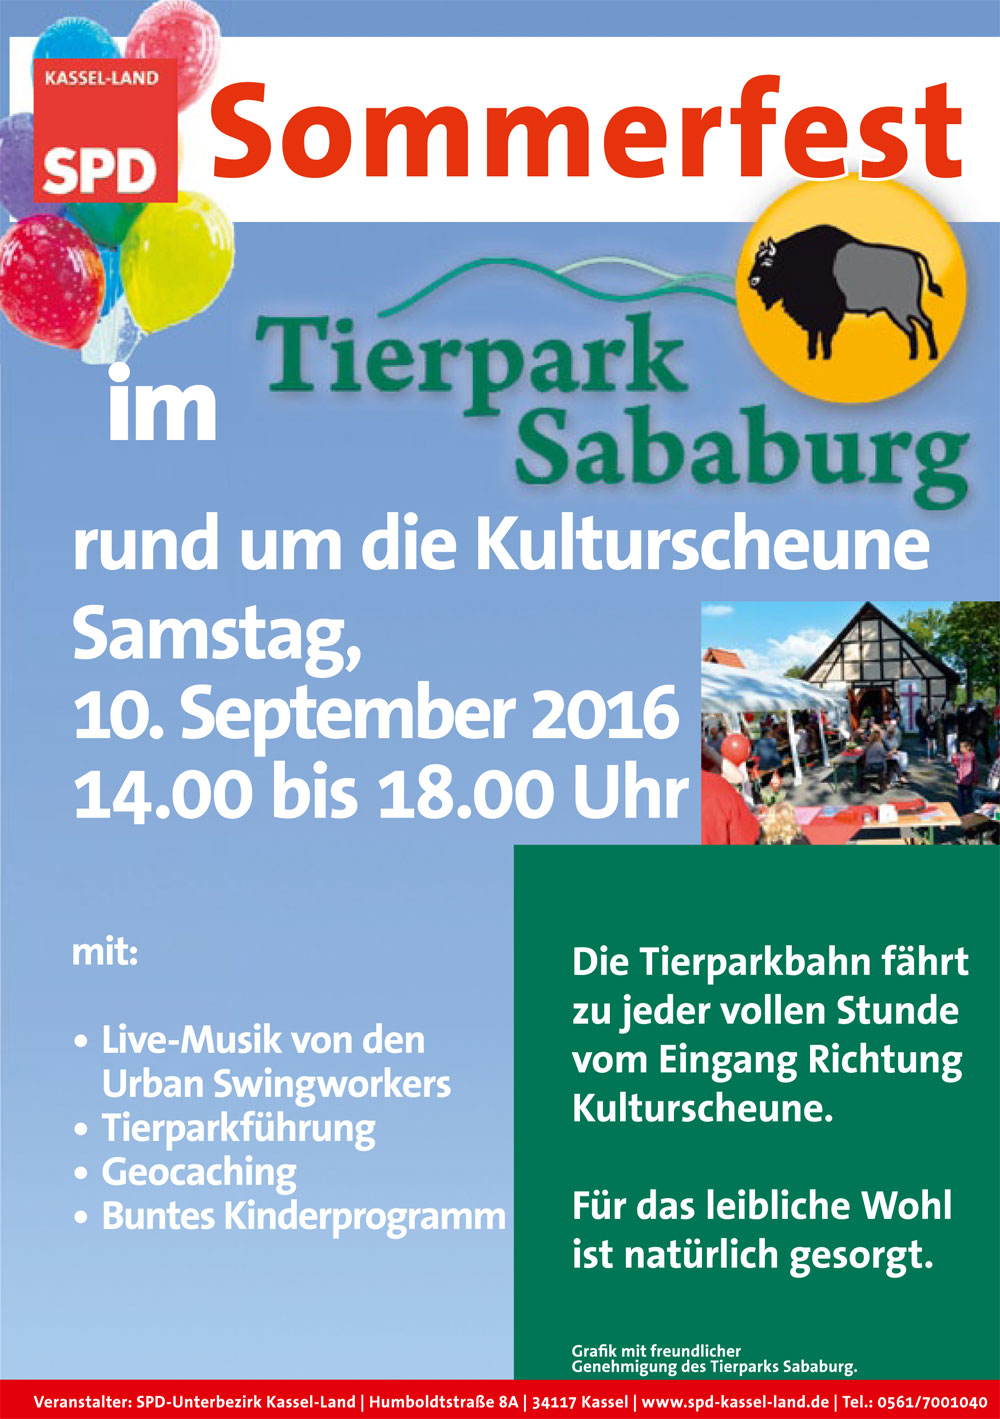 Sommerfest 2016 im Tierpark Sababurg